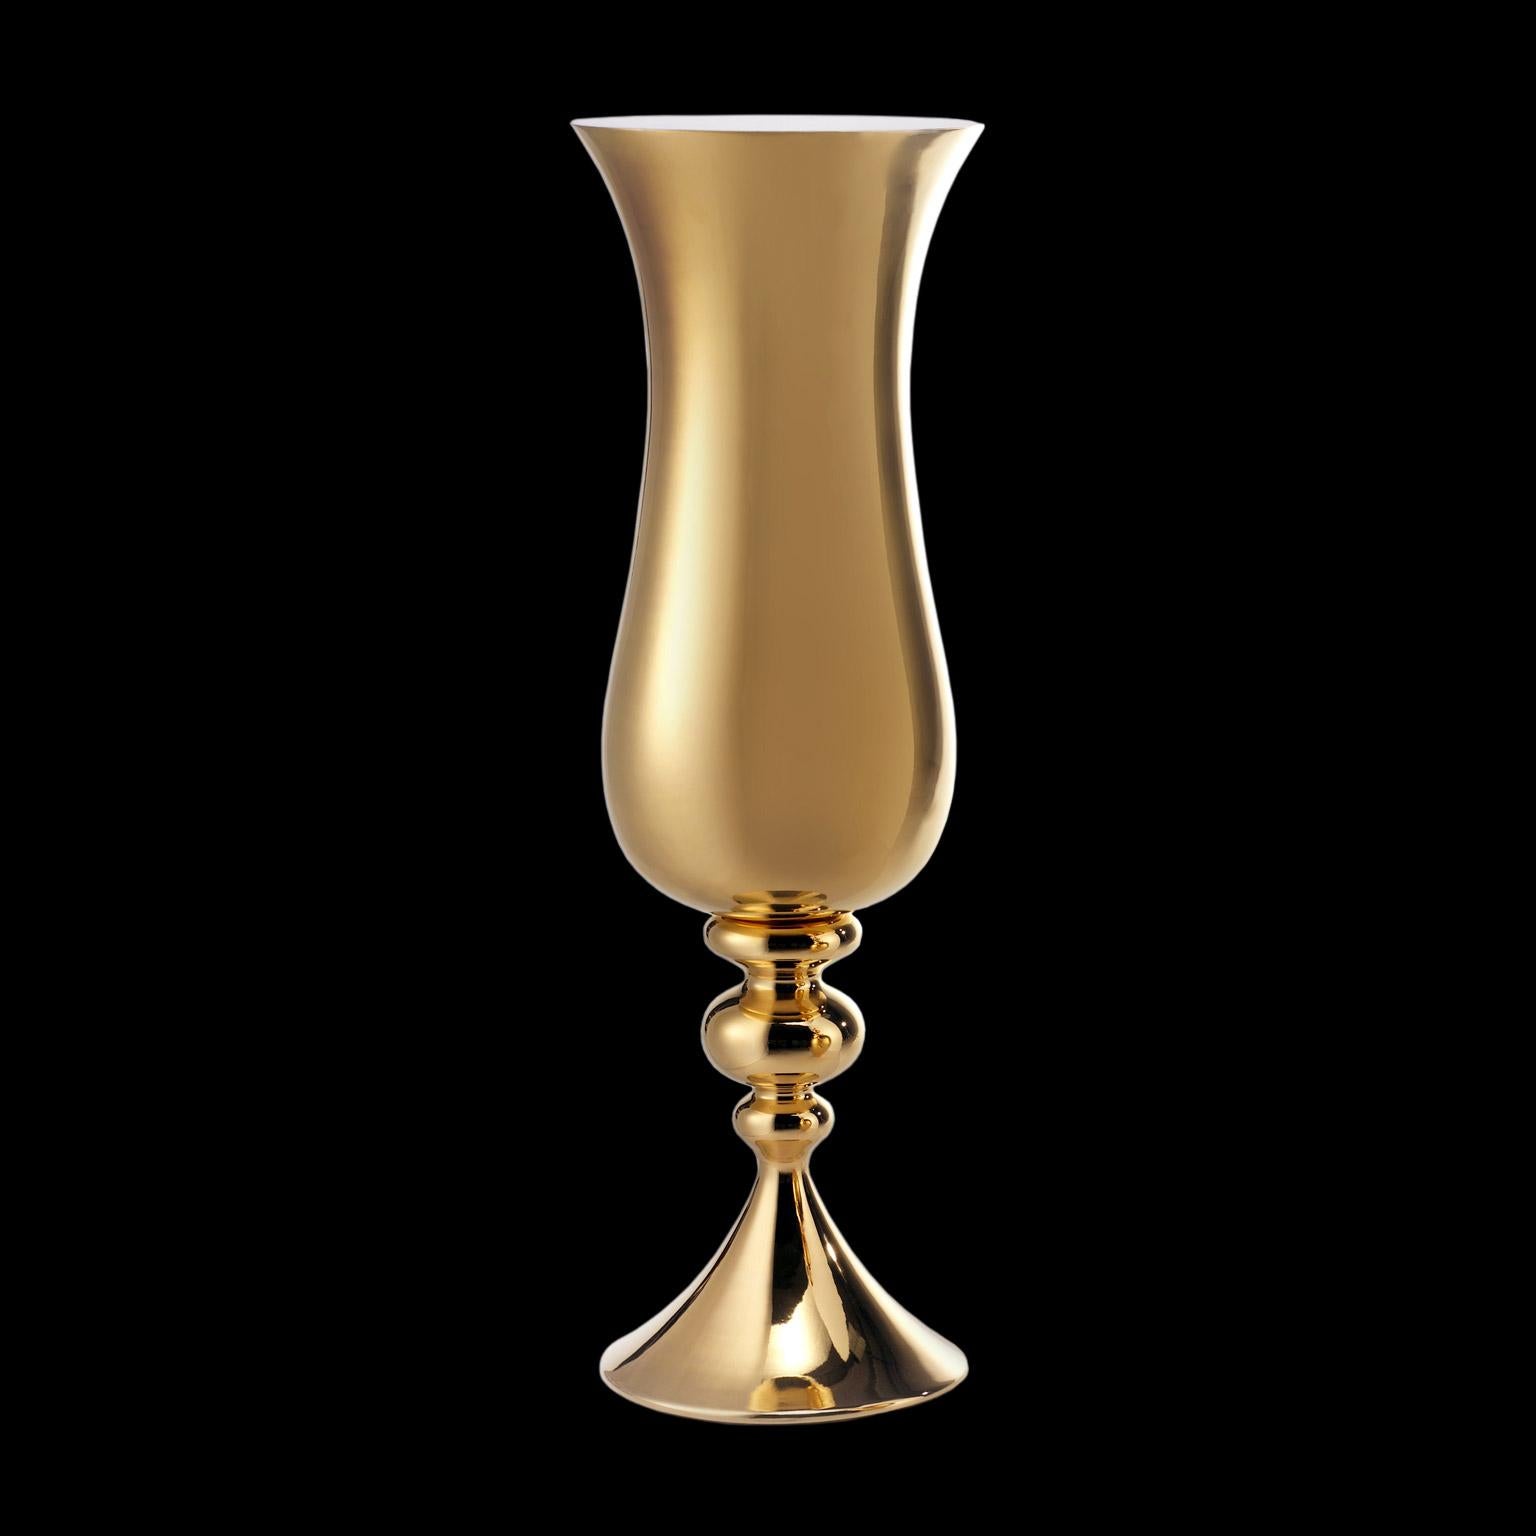 Vase en céramique LOTH
morue. CP050 
Fabriqué à la main en or 24 carats
et blanc mat glacé à l'intérieur  

mesures : 
H. 140,0 cm.
Dm. 40,0 cm.